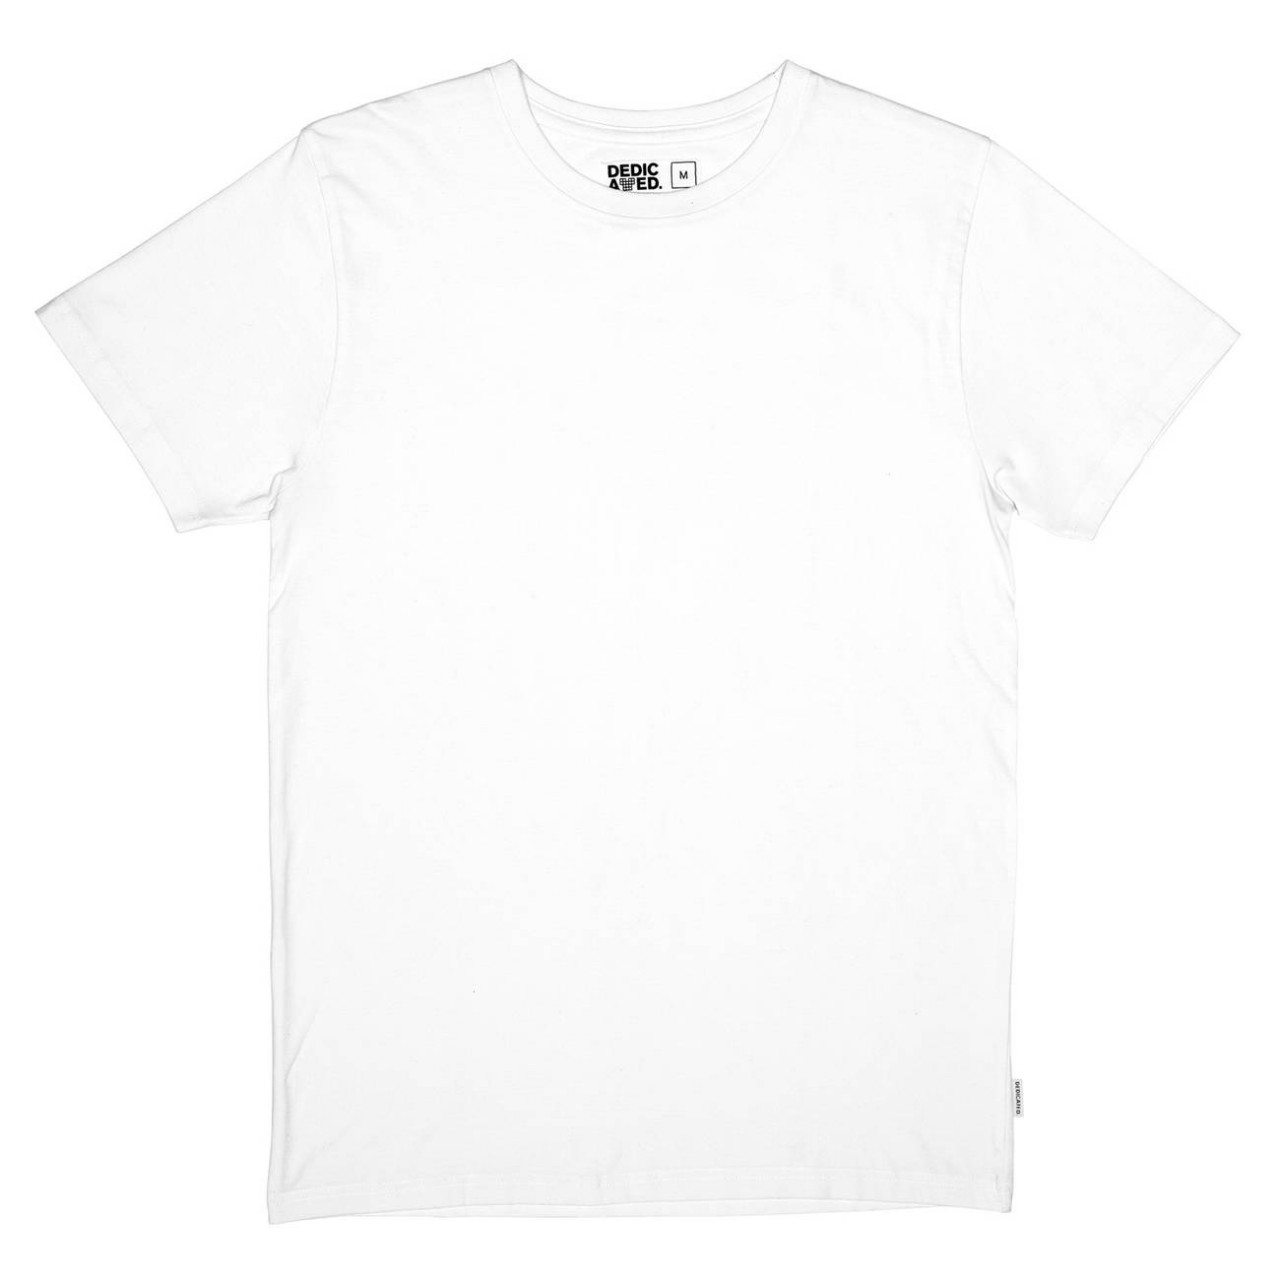 T-shirt Stockholm Base White - DEDICATED - HERREN | T-Shirts | Unifarben & Streifen